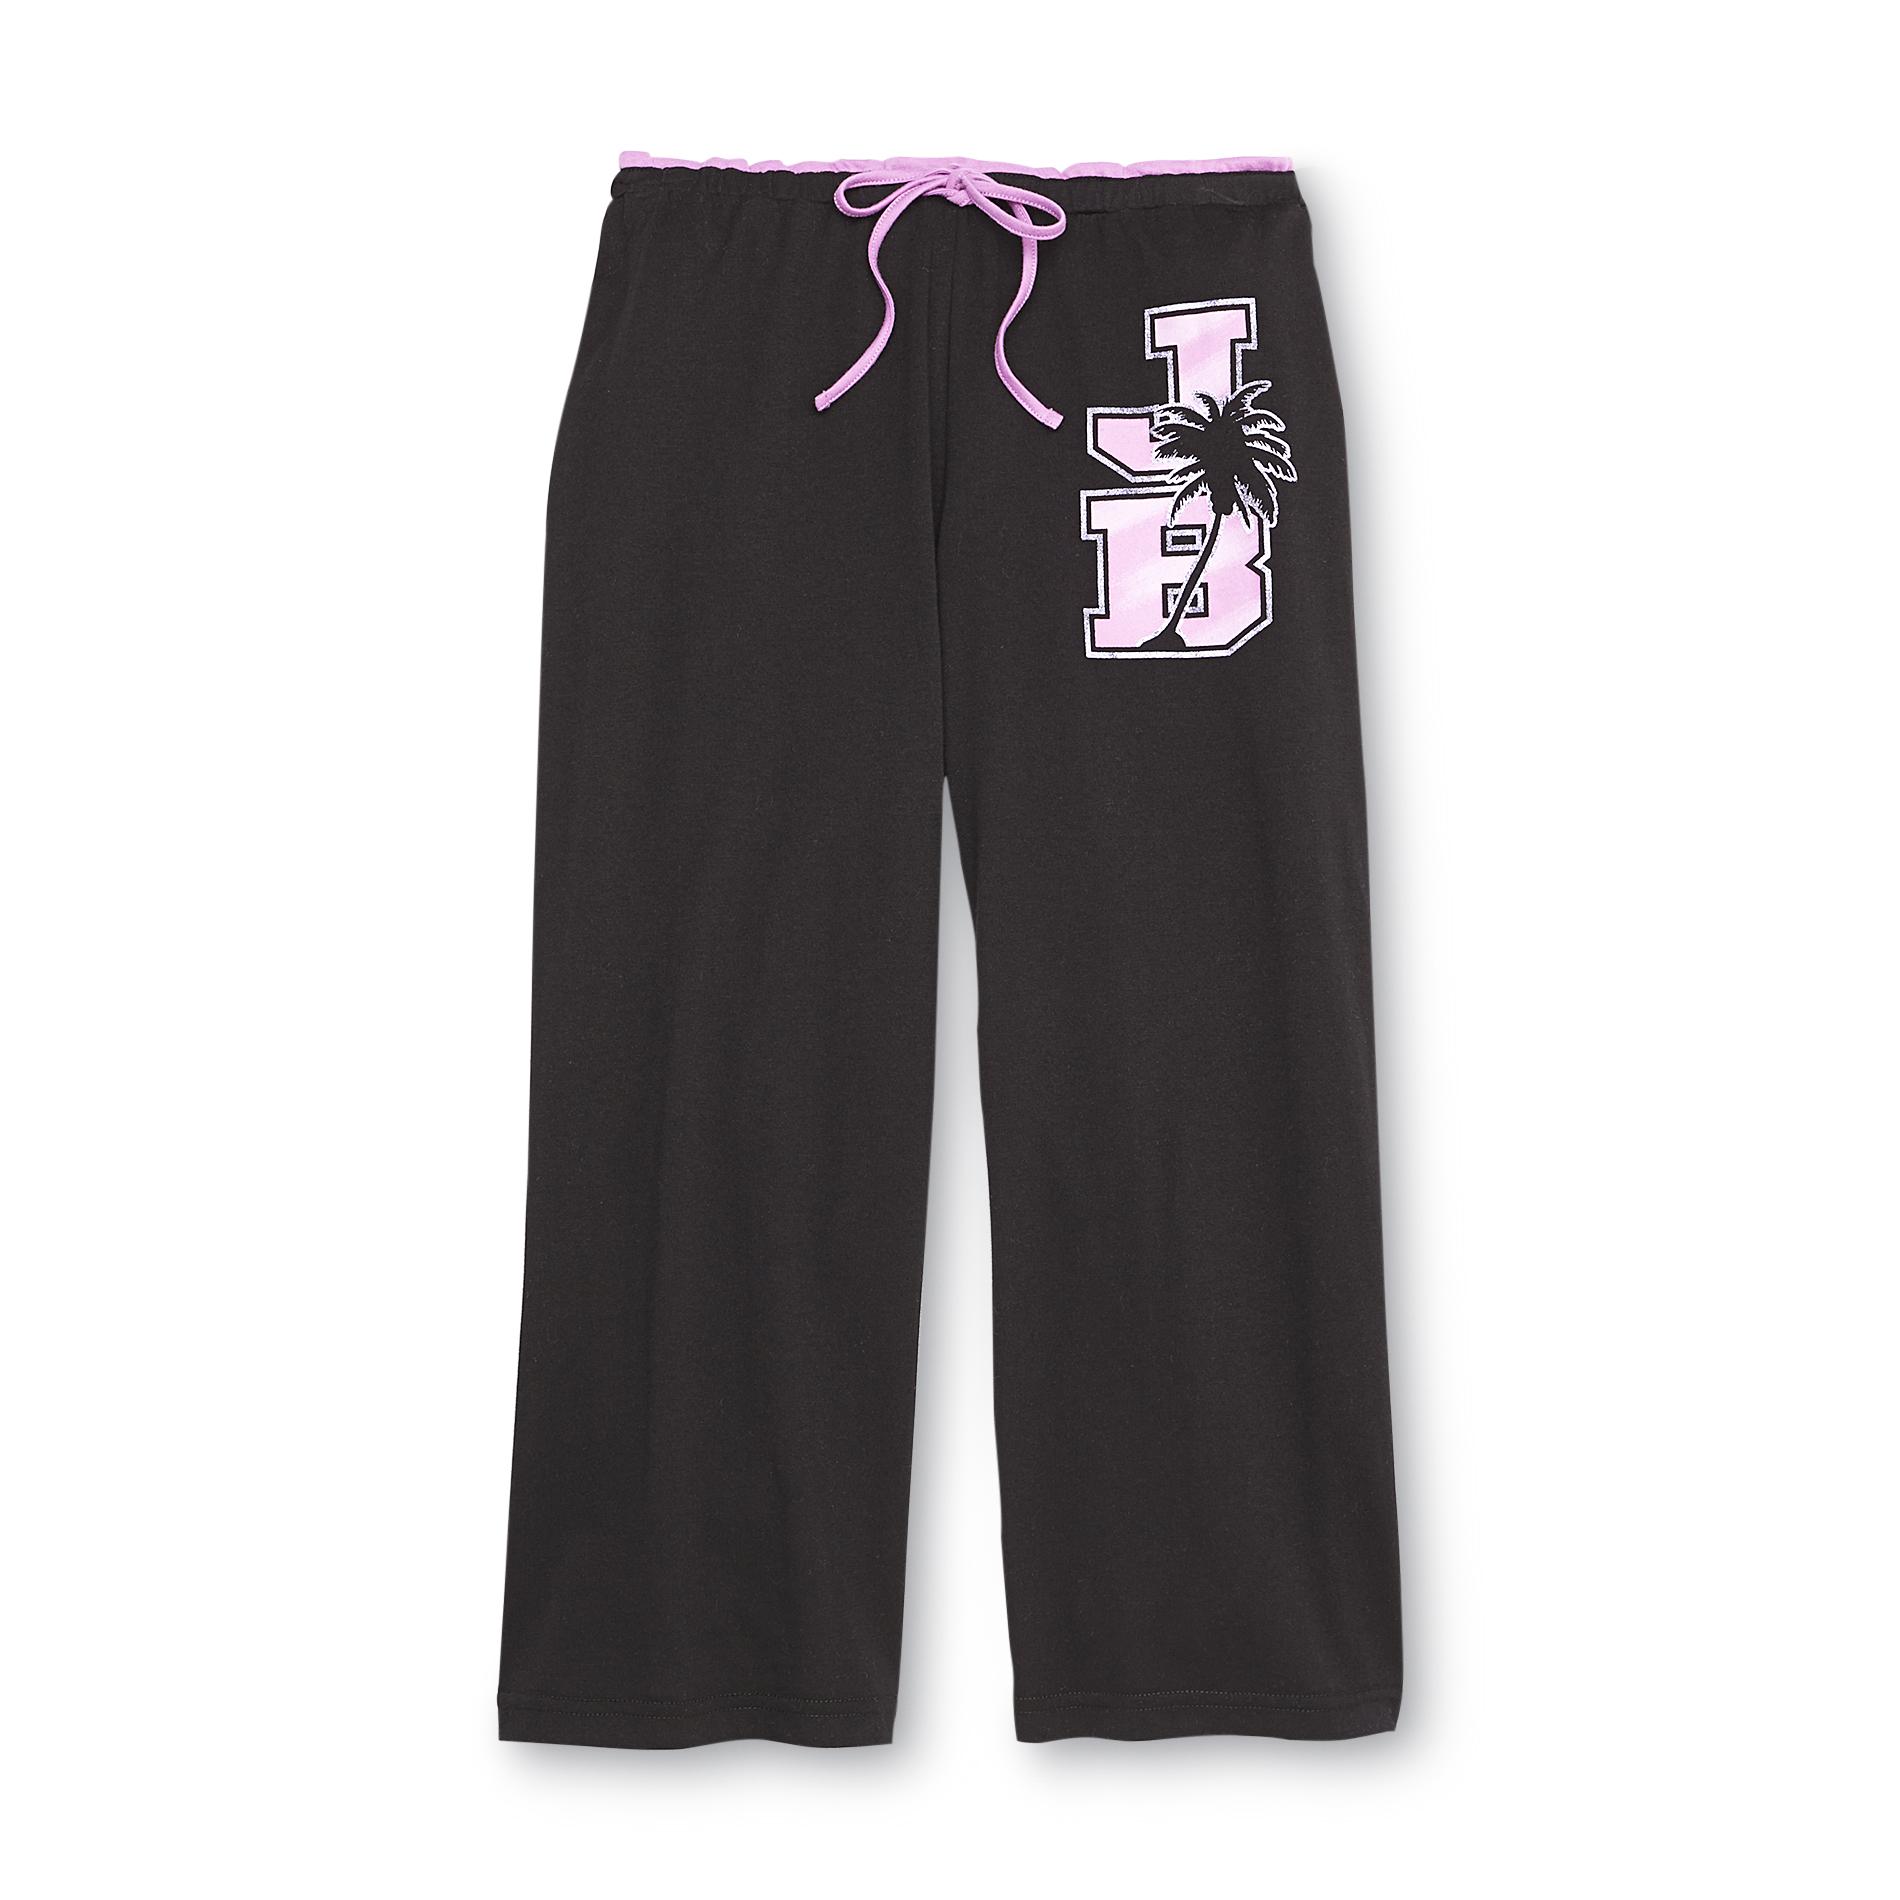 Joe Boxer Women's Knit Capri Lounge Pants